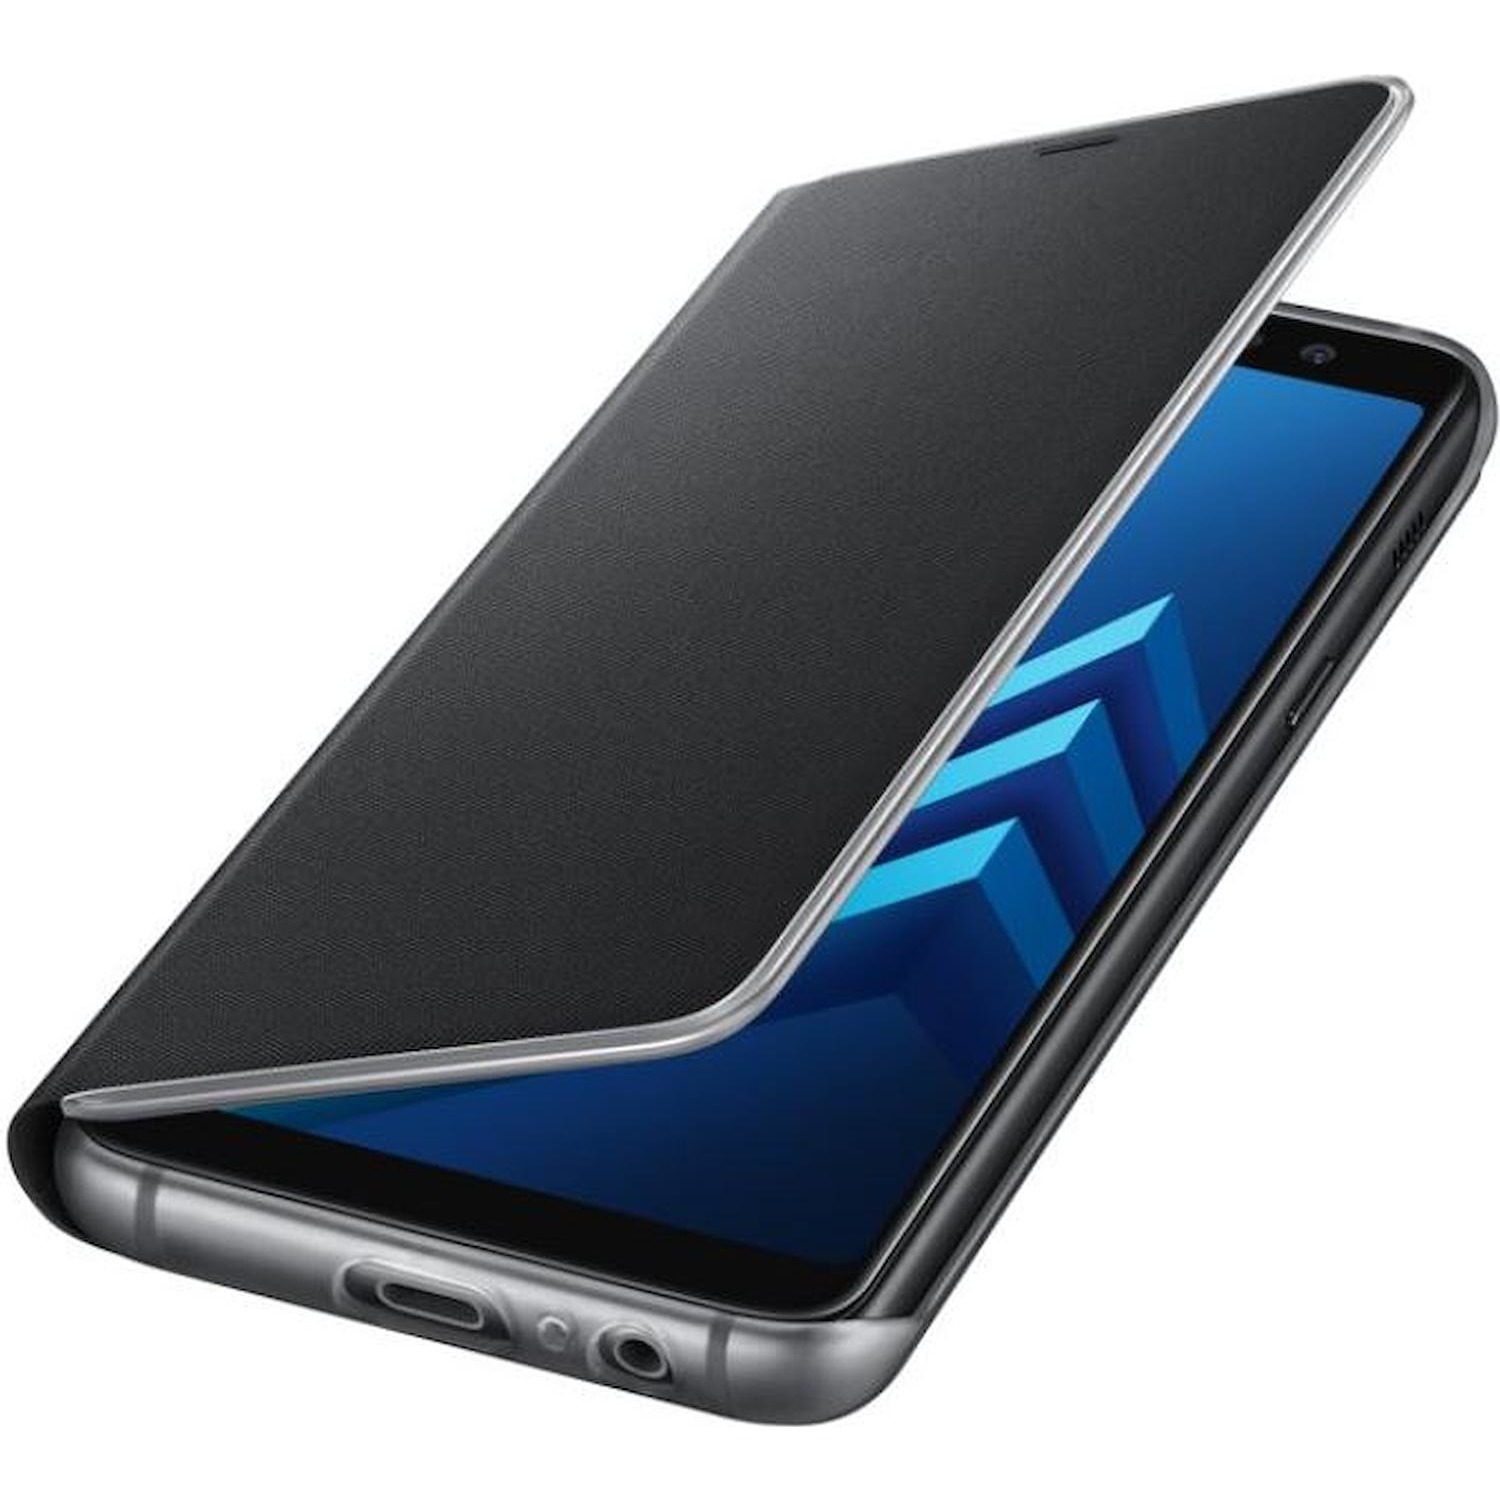 Immagine per Neon Flip cover Samsung per A8 black da DIMOStore